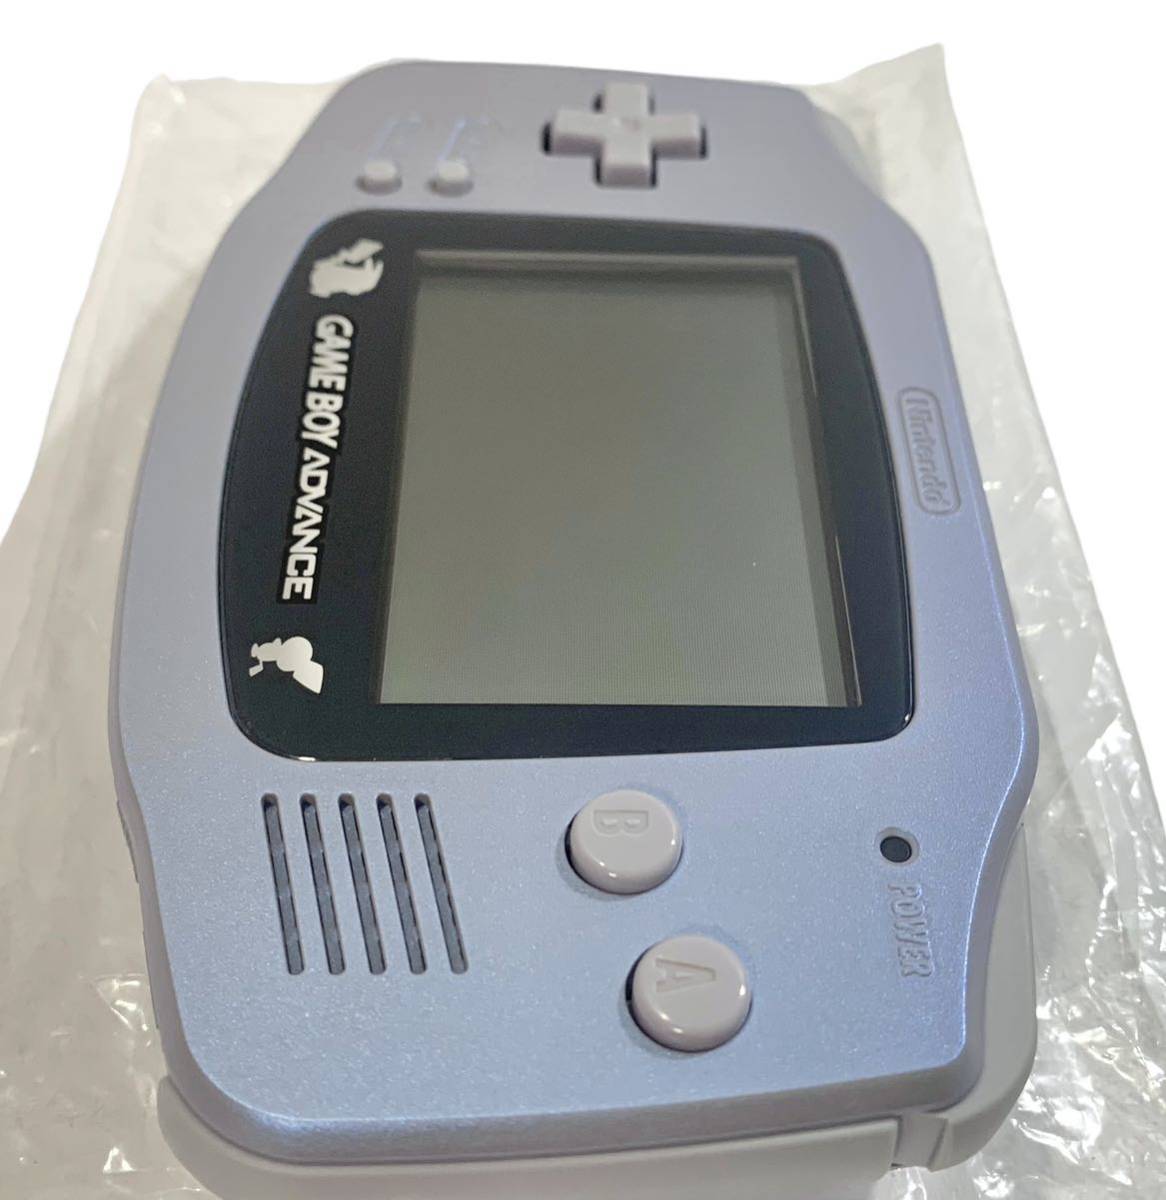  редкостный товар неиспользуемый товар не использовался Game Boy Advance корпус acid kn голубой 